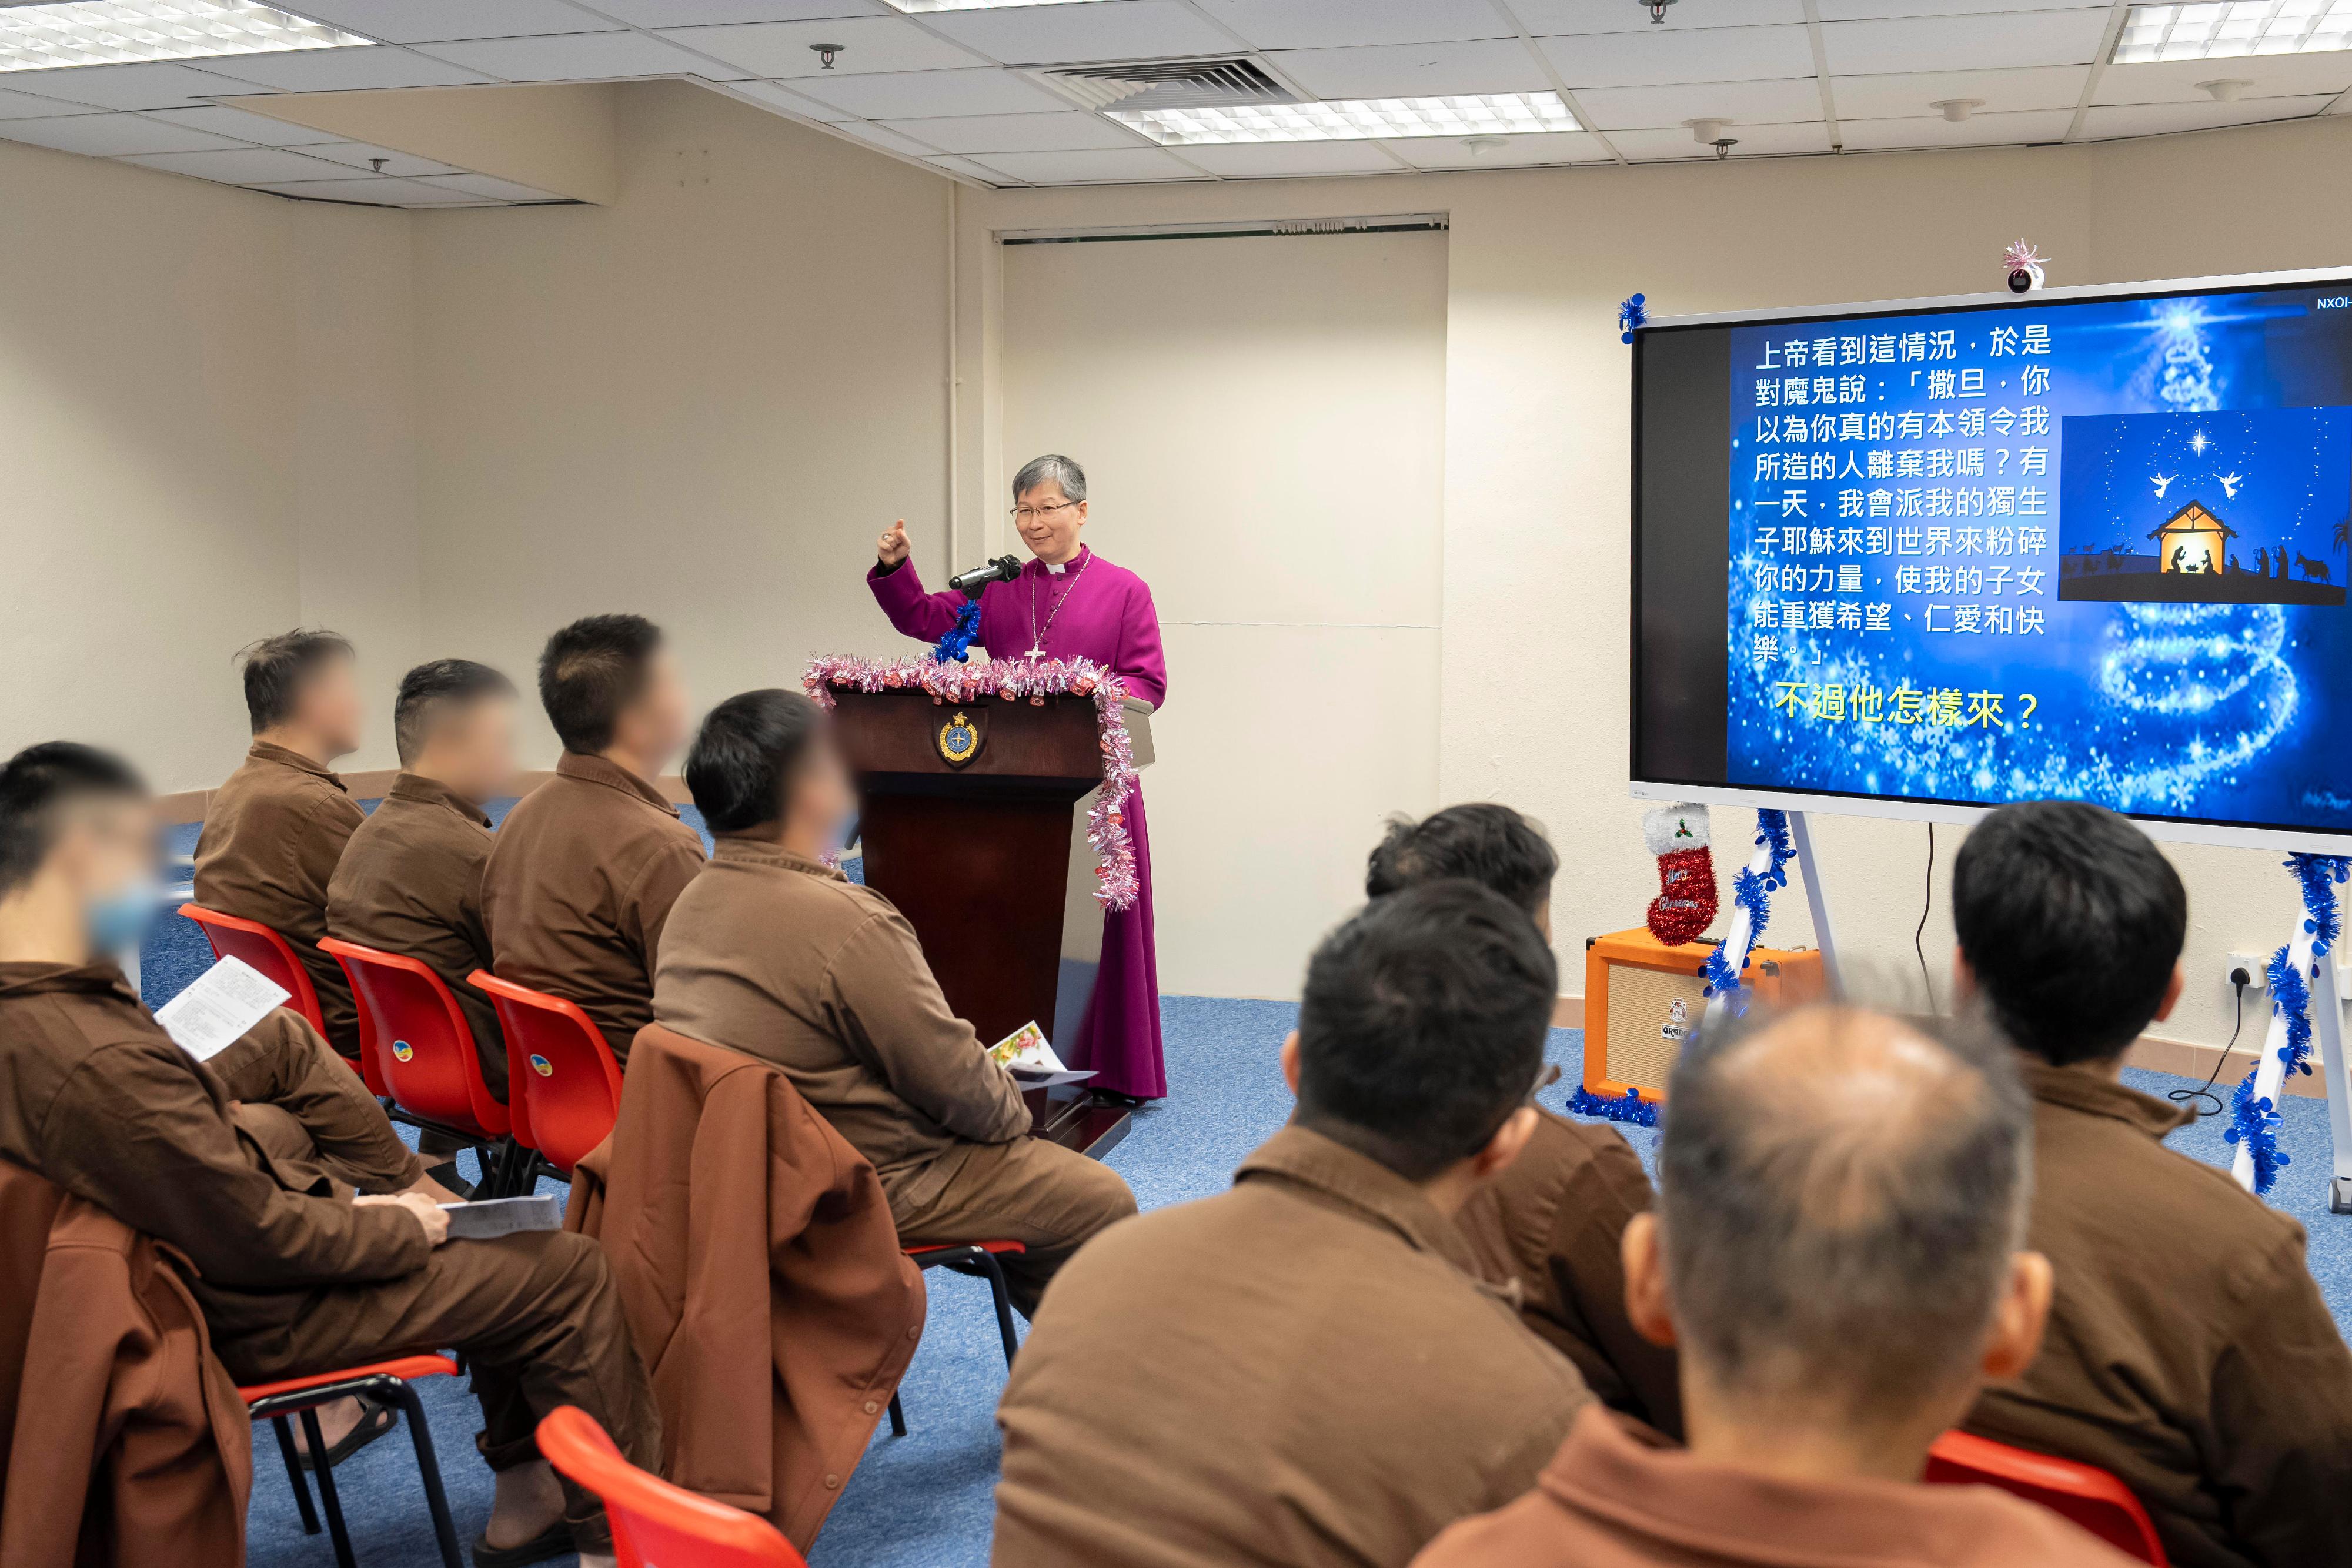 香港圣公会大主教陈讴明于十二月二十一日到白沙湾惩教所主持圣诞崇拜。

